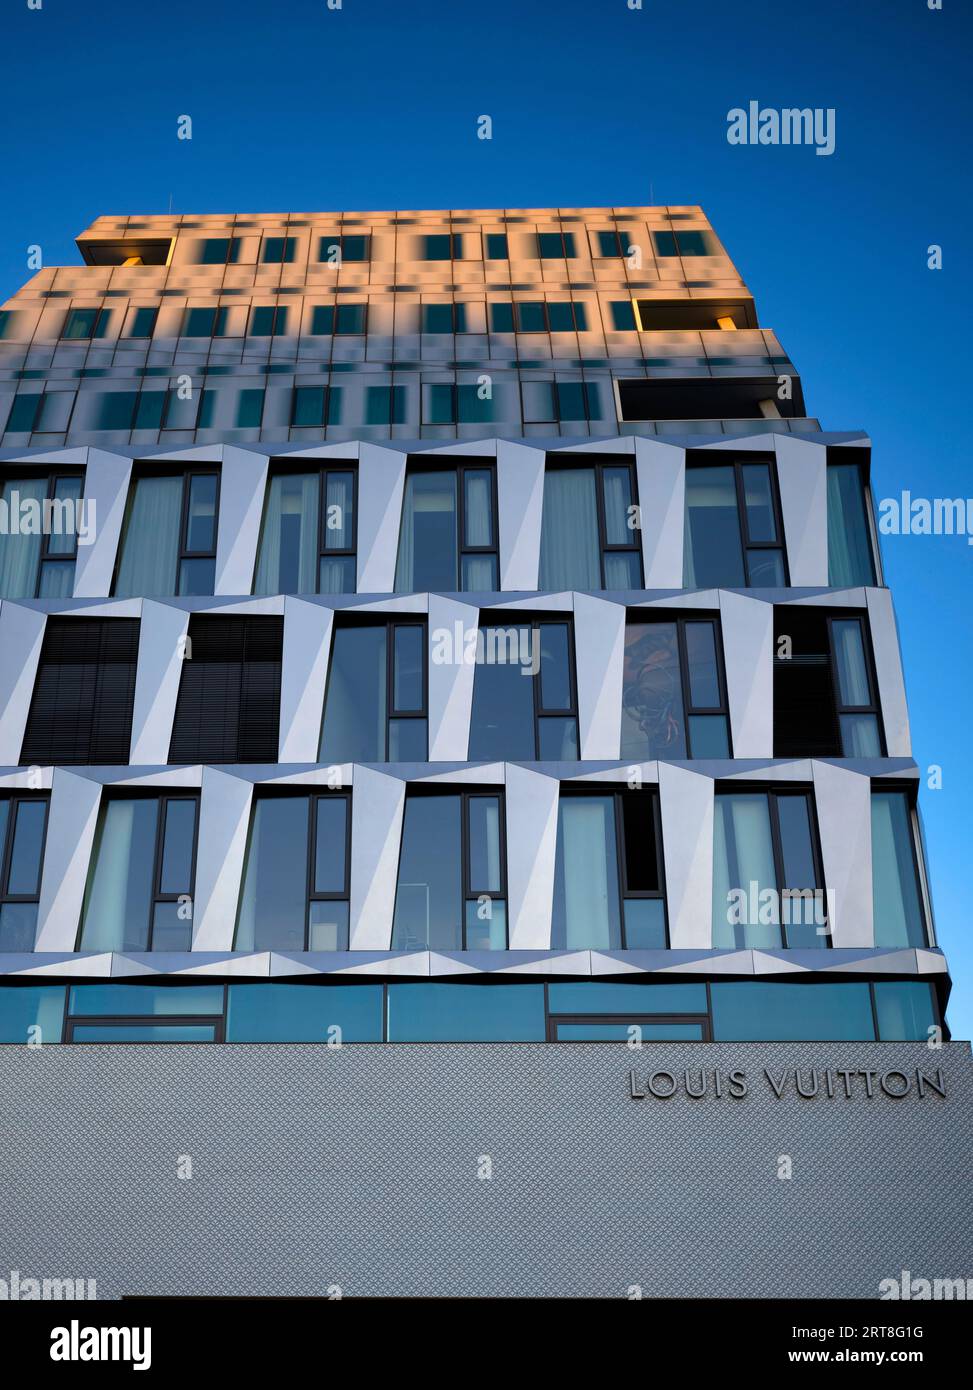 Louis Vuitton Brand Store, logo, shop, Dorotheen Quartier, DOQU, shopping mall, blue hour, Stuttgart, Baden-Wuerttemberg, Germany Stock Photo